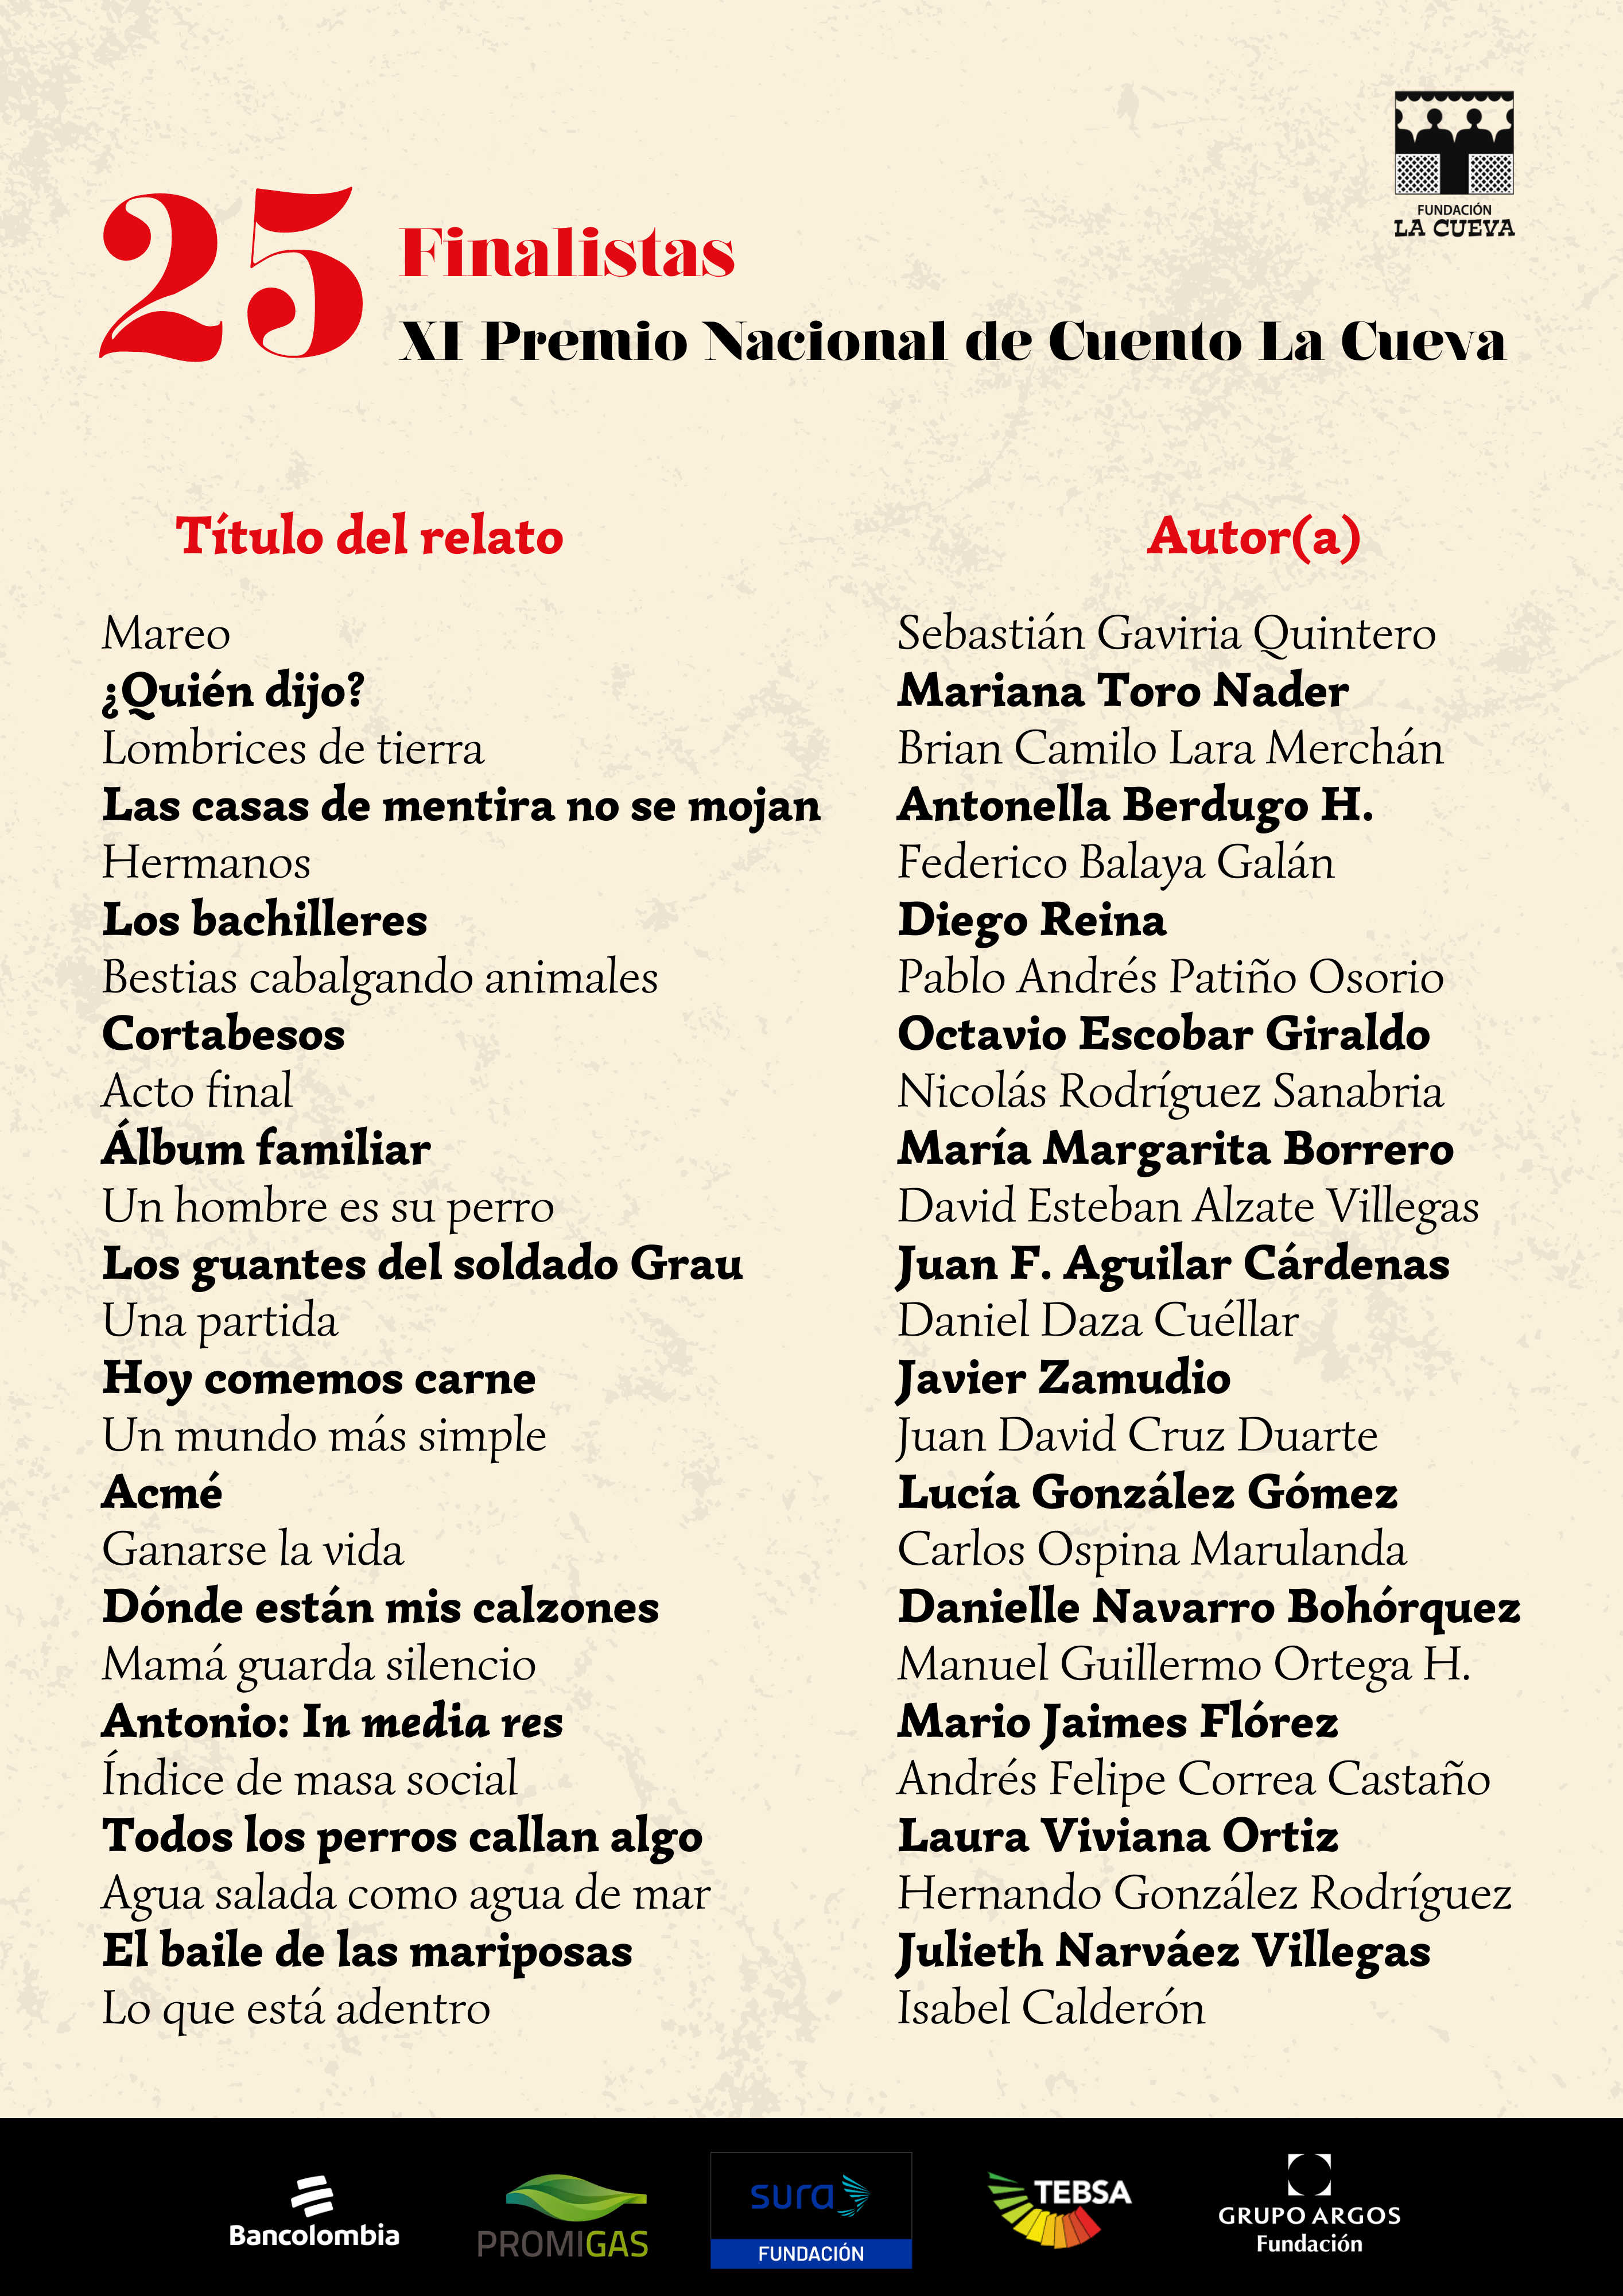 Póster oficial de los 25 finalistas de la undécima edición del Premio Nacional de Cuento La Cueva. (Fundación La Cueva).